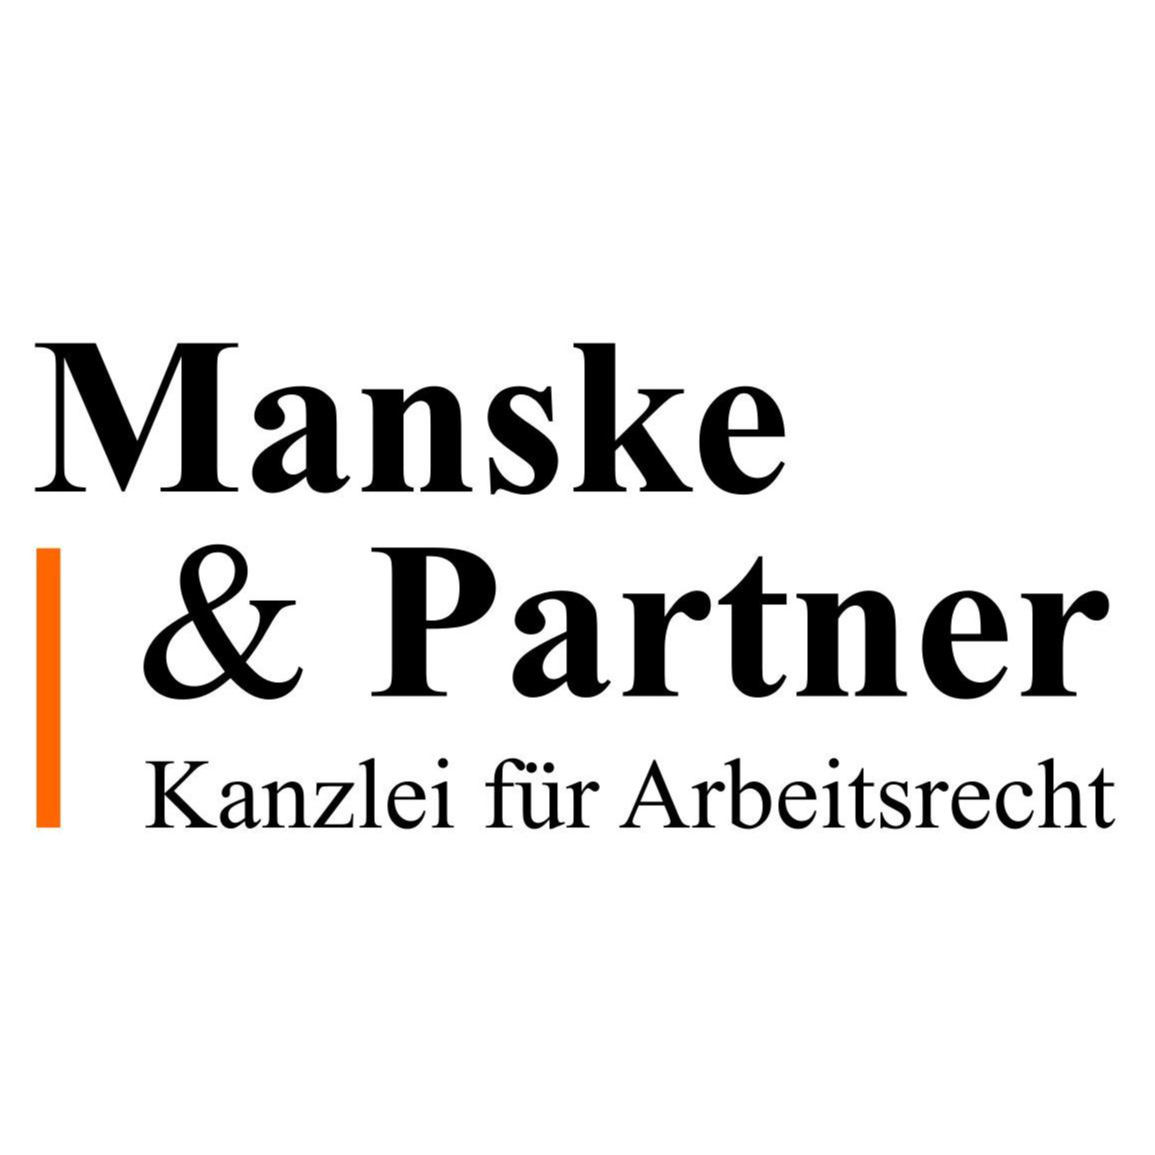 Manske & Partner Kanzlei für Arbeitsrecht  